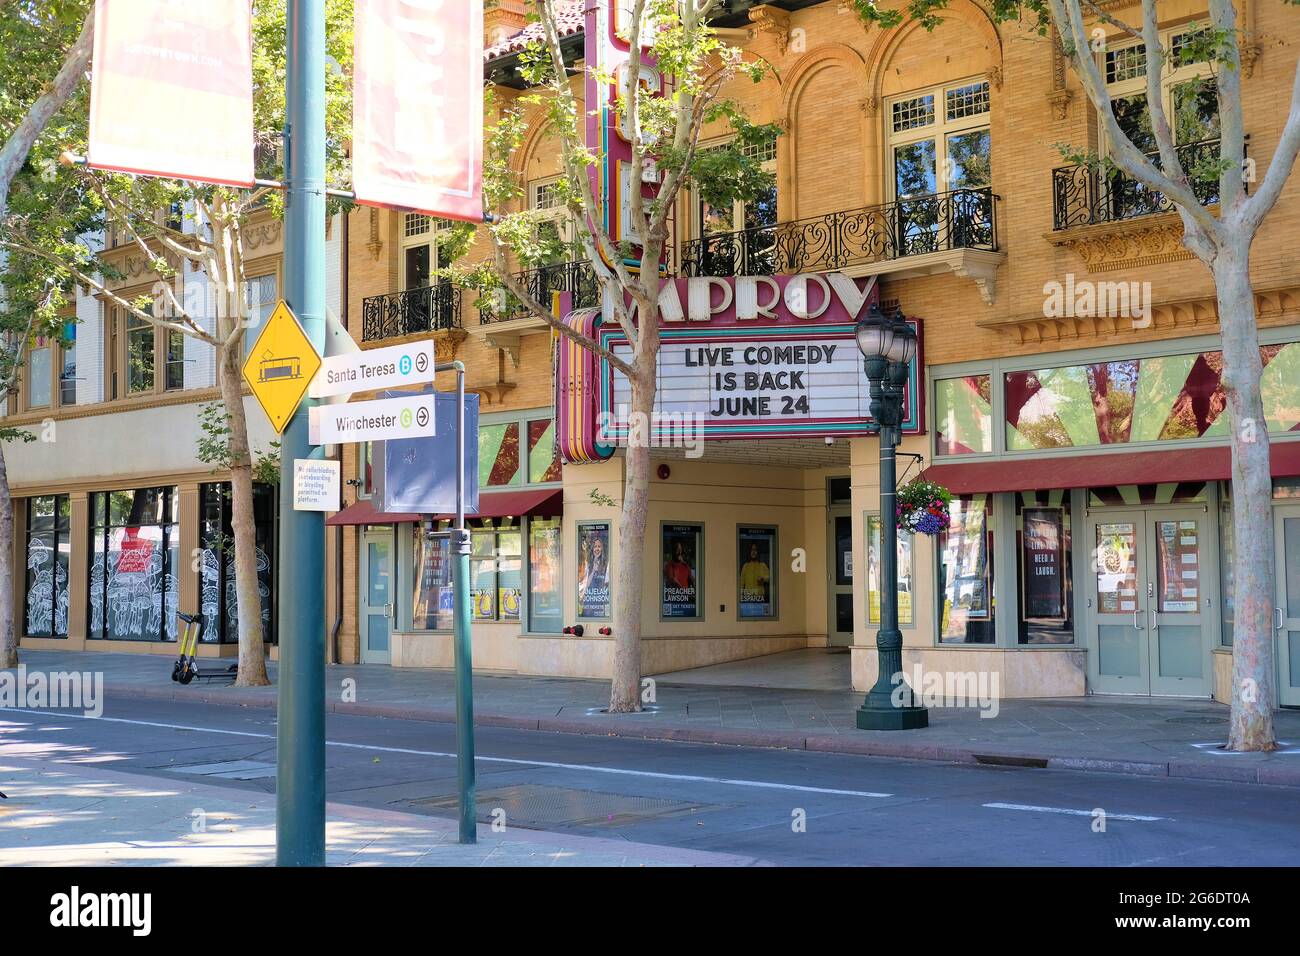 La marquesina del Club de Comedia San José Improv en el centro de San José, California, anunciando su reapertura después del cierre de refugio pandémico Covid-19. Foto de stock